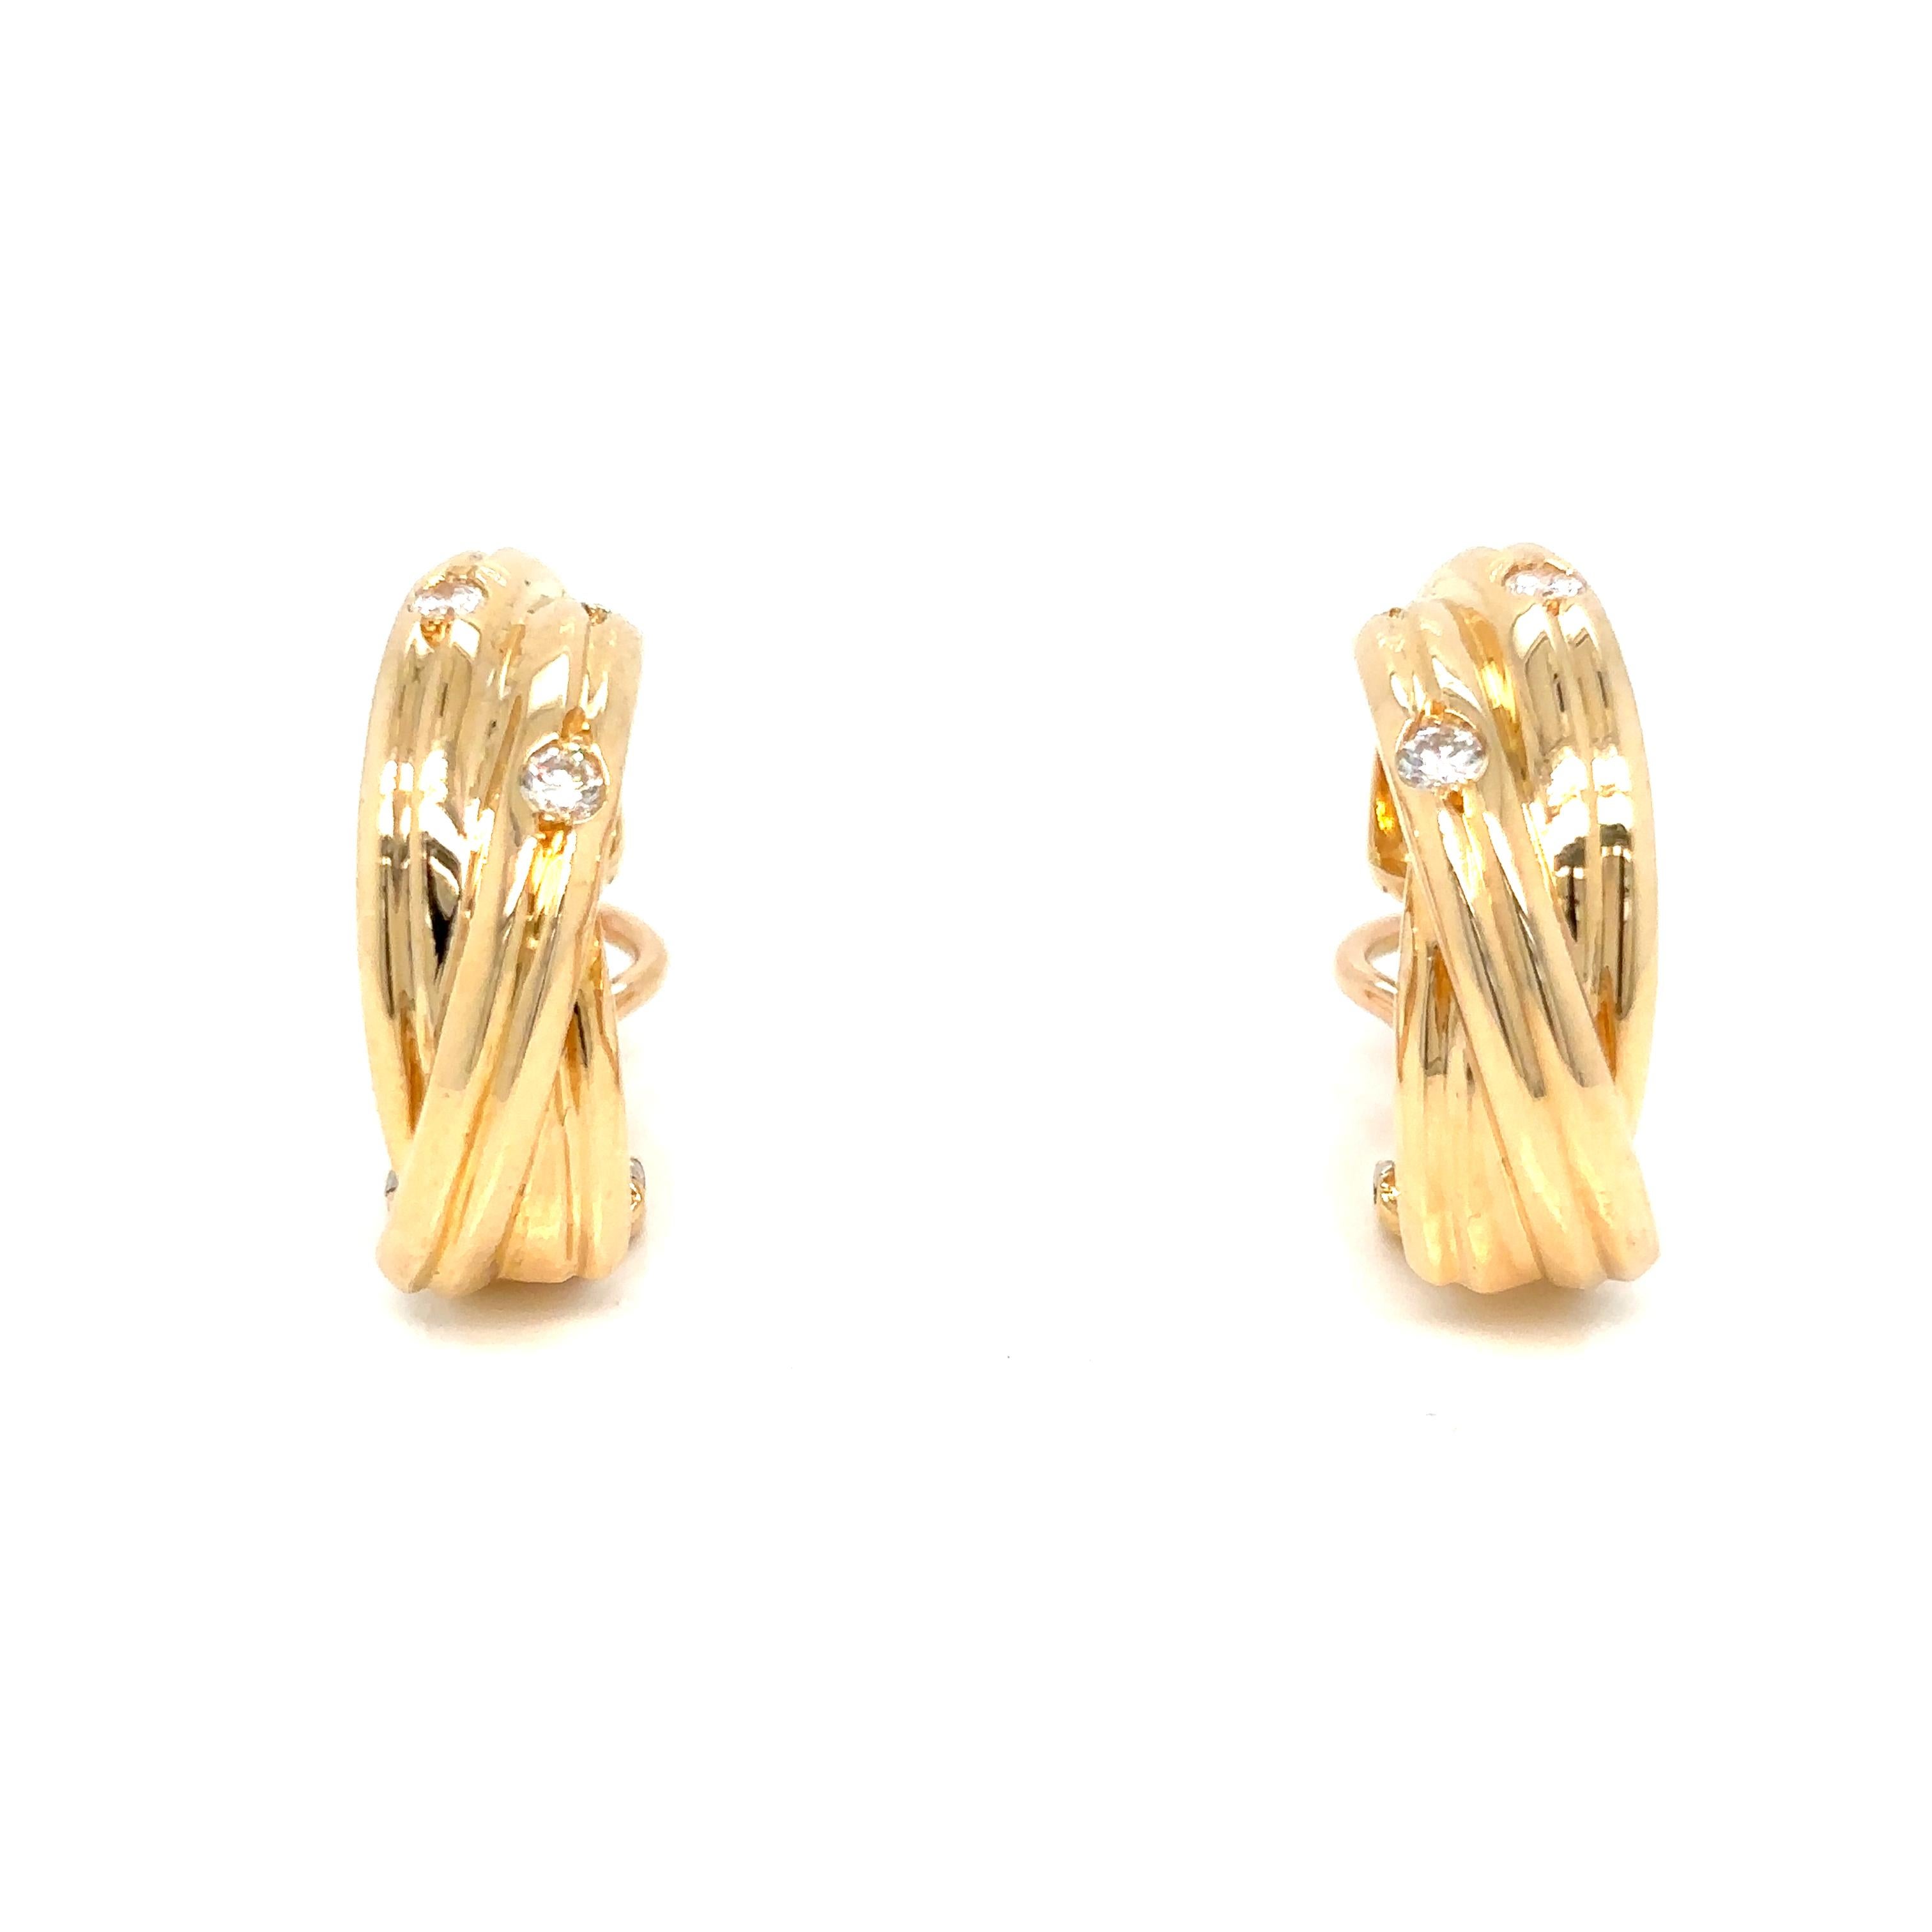 Boucles d'oreilles Trinity Diamond Hoop, chacune composée de trois demi-boucles d'oreilles entrelacées en or jaune 18ct et serties de cinq diamants ronds de taille brillant, montées sur pivot et présentées dans leur écrin d'origine.

Diamètre